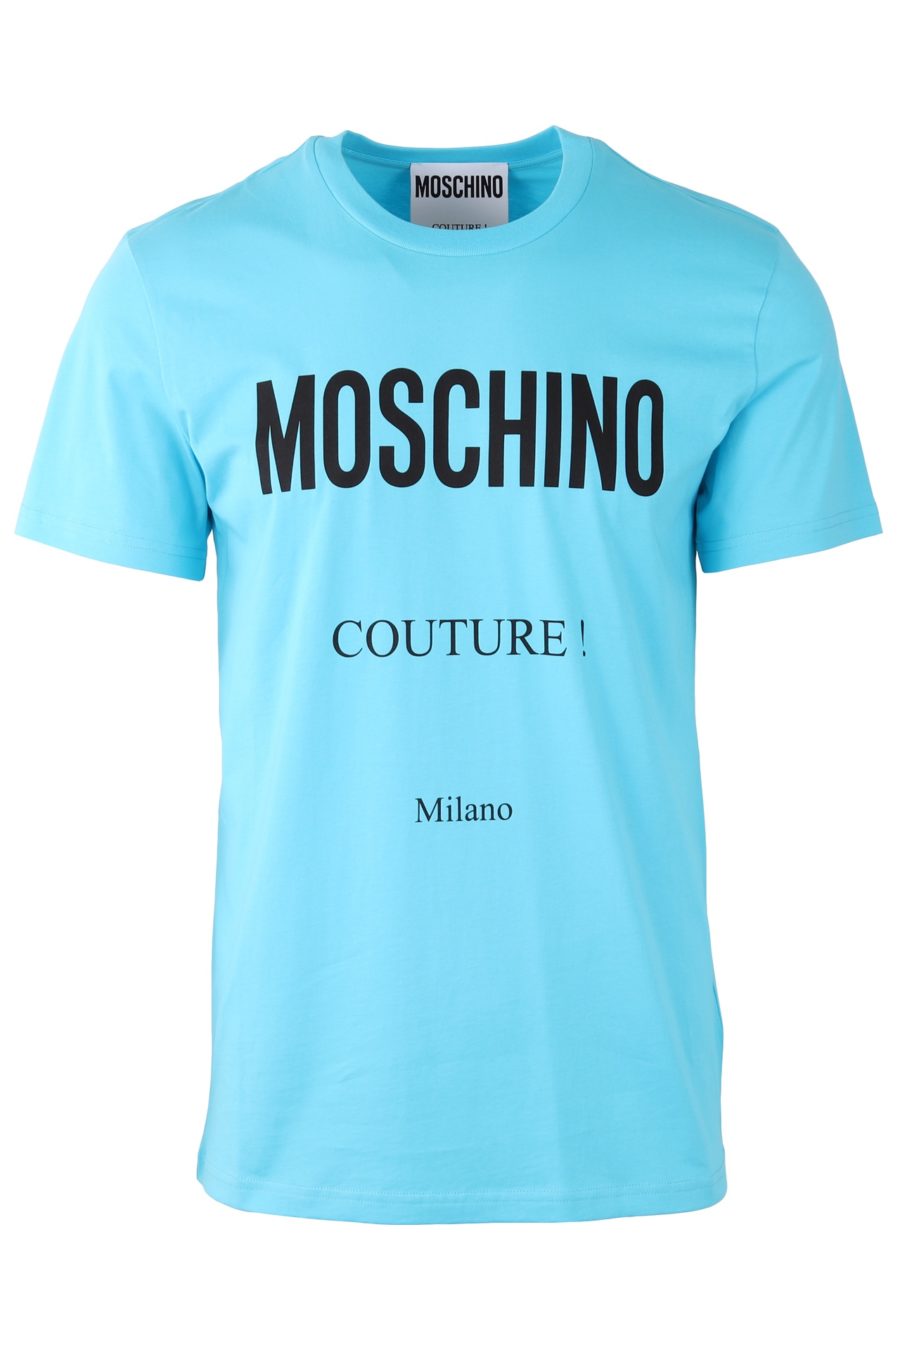 Camiseta Moschino Couture azul celeste con logo negro - 43279f8ab56a3b98b9b1ae4ff95d3f0b5470c4c5